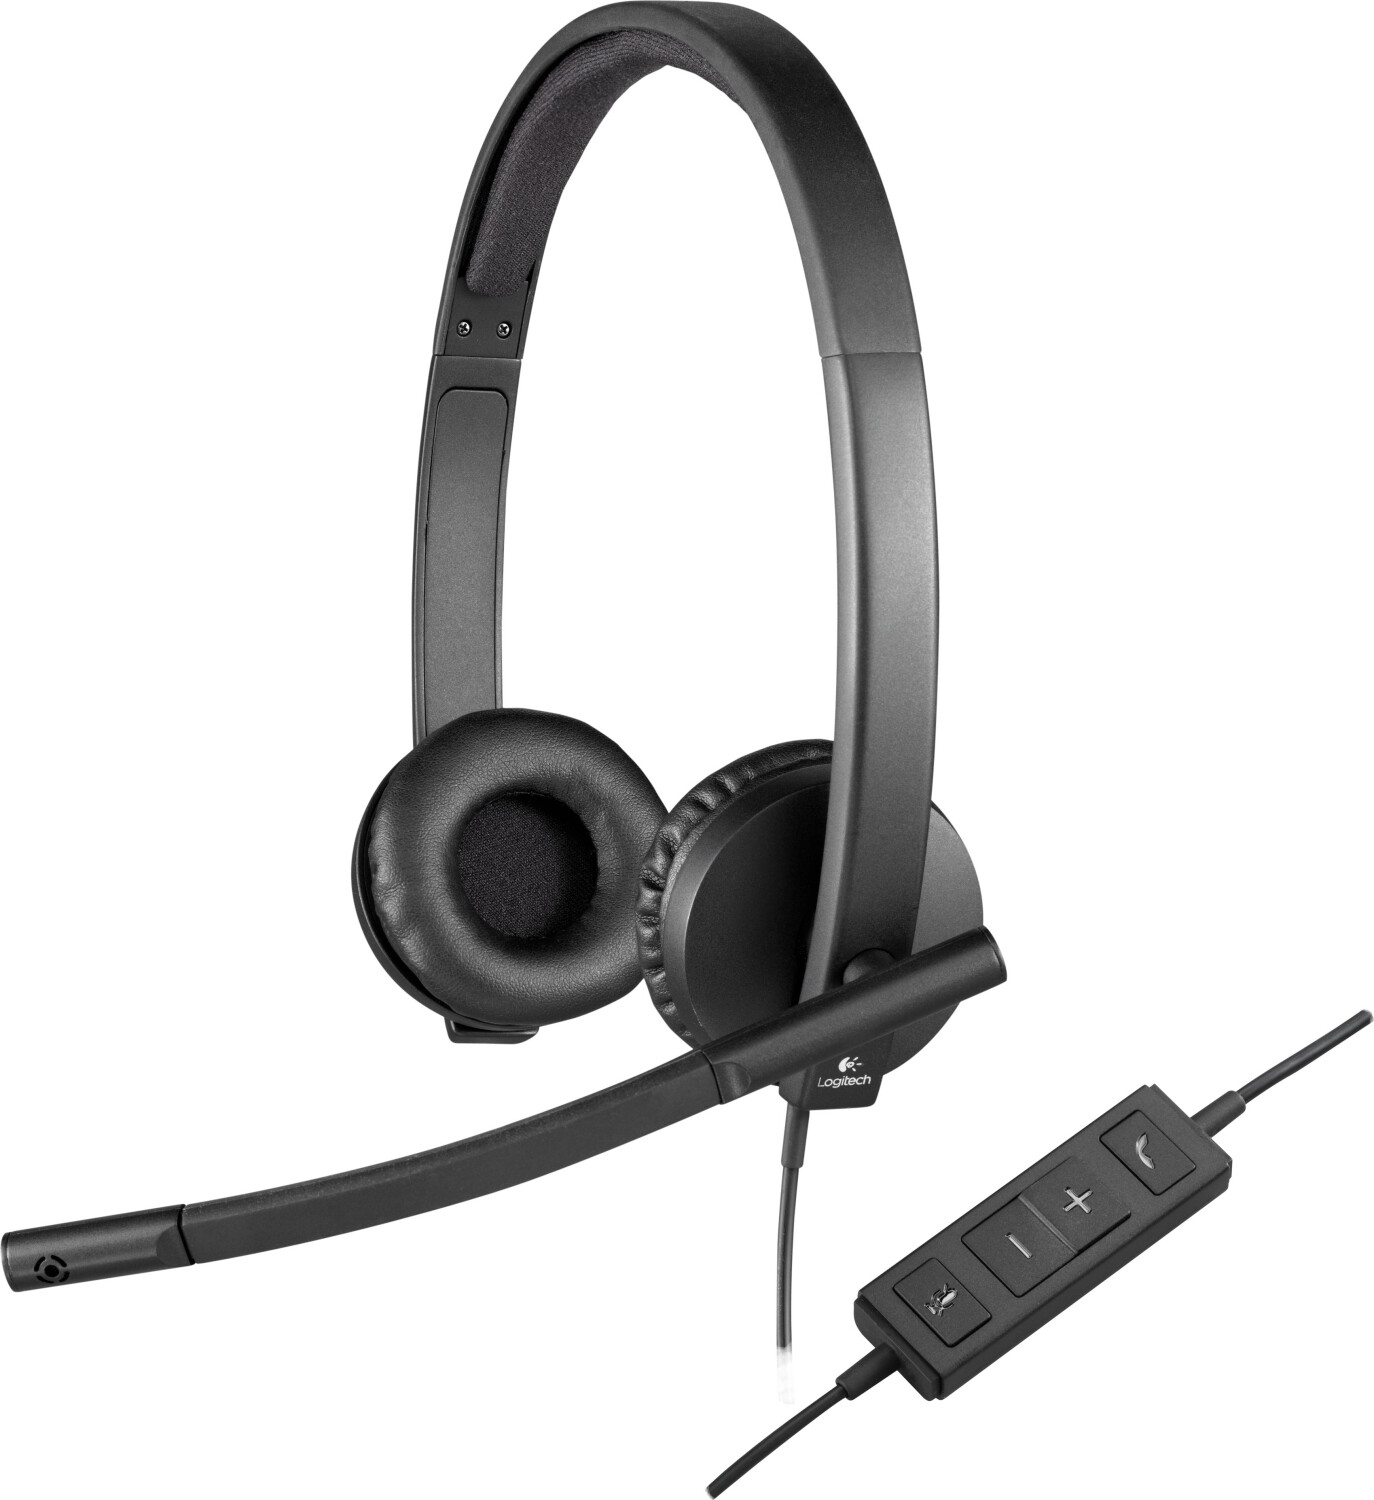 Casque ( ecouteurs / headset ) Logitech 960 Filaire/Noir